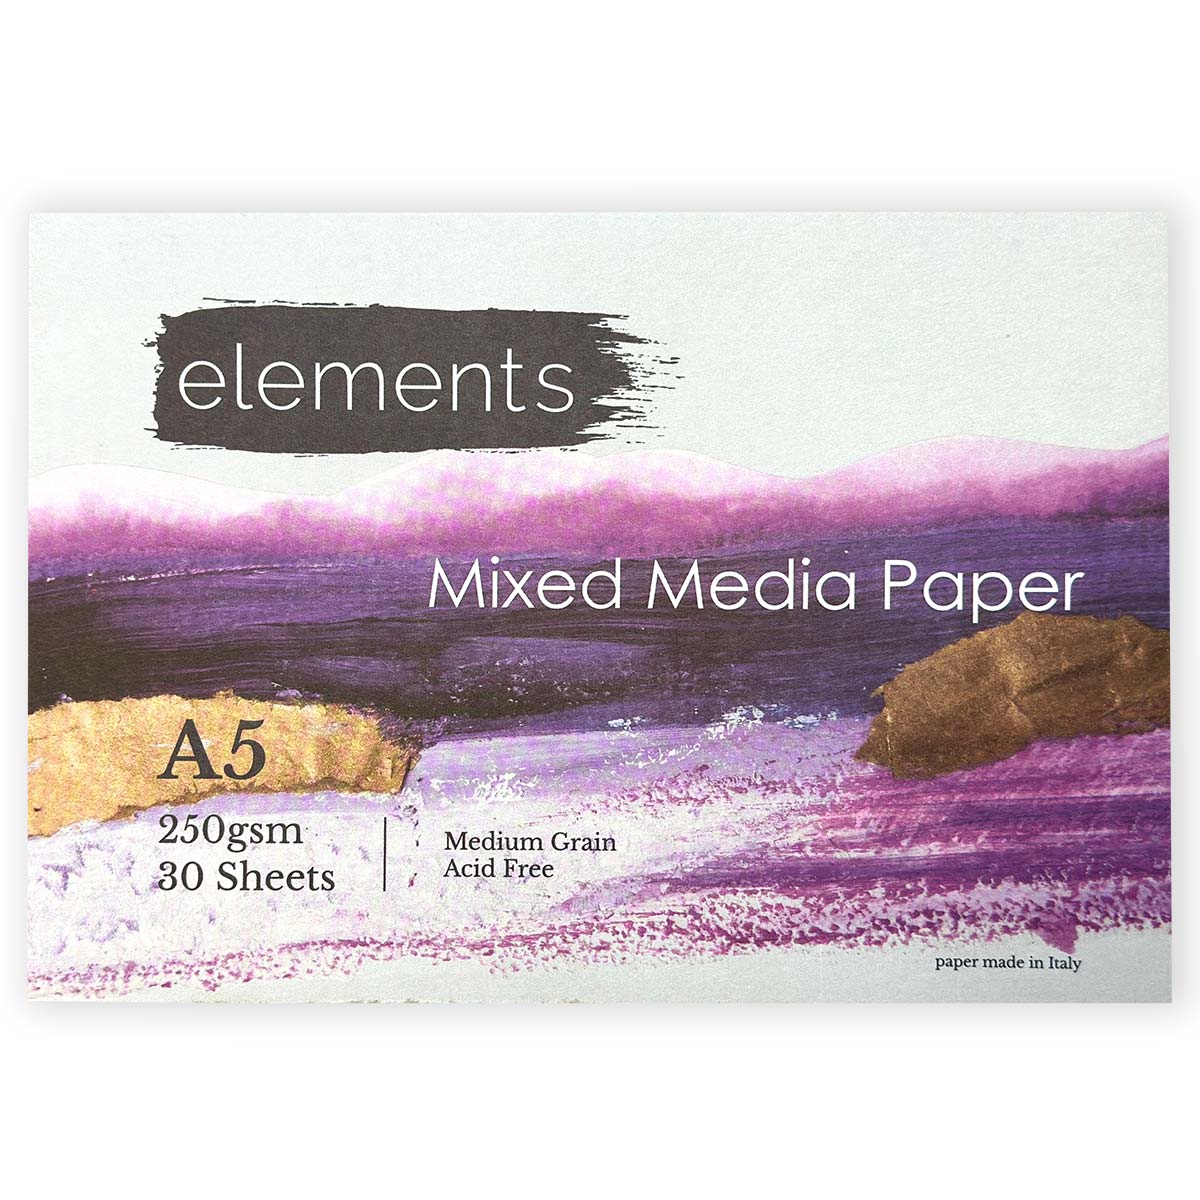 Elements Mixed Media Pad - 250gsm - 30 Sheets - A5